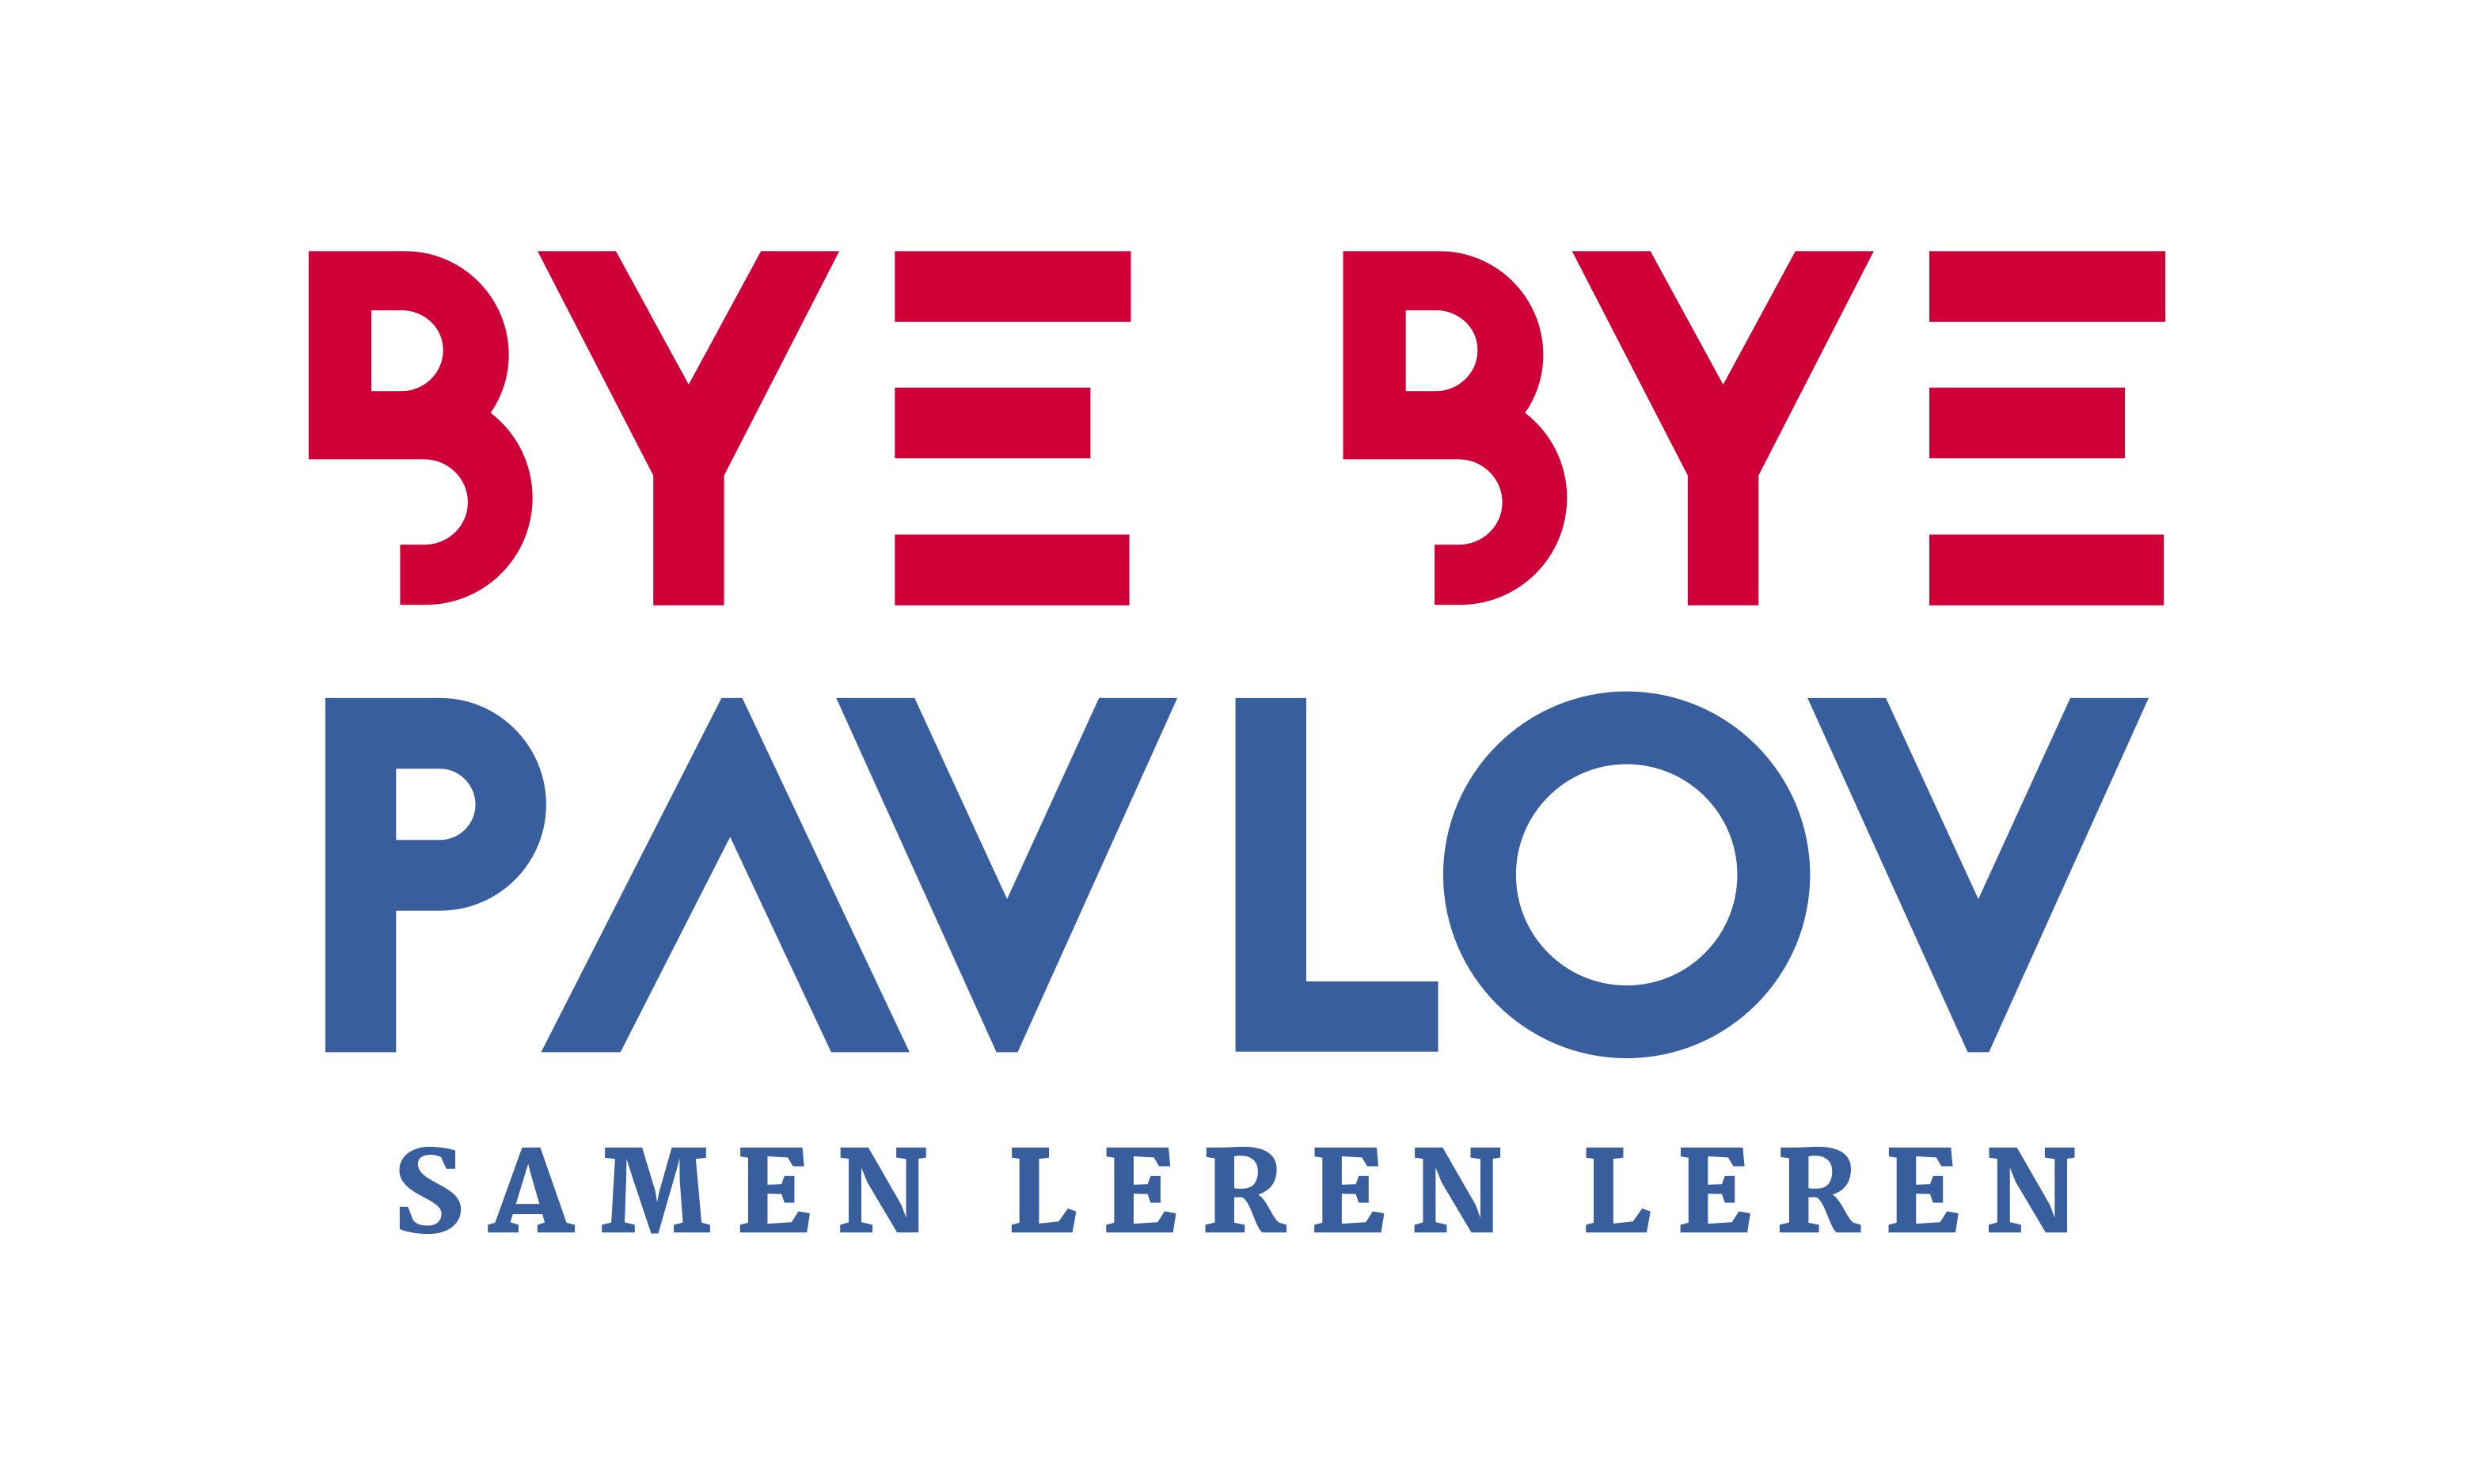 Bye Bye Pavlov